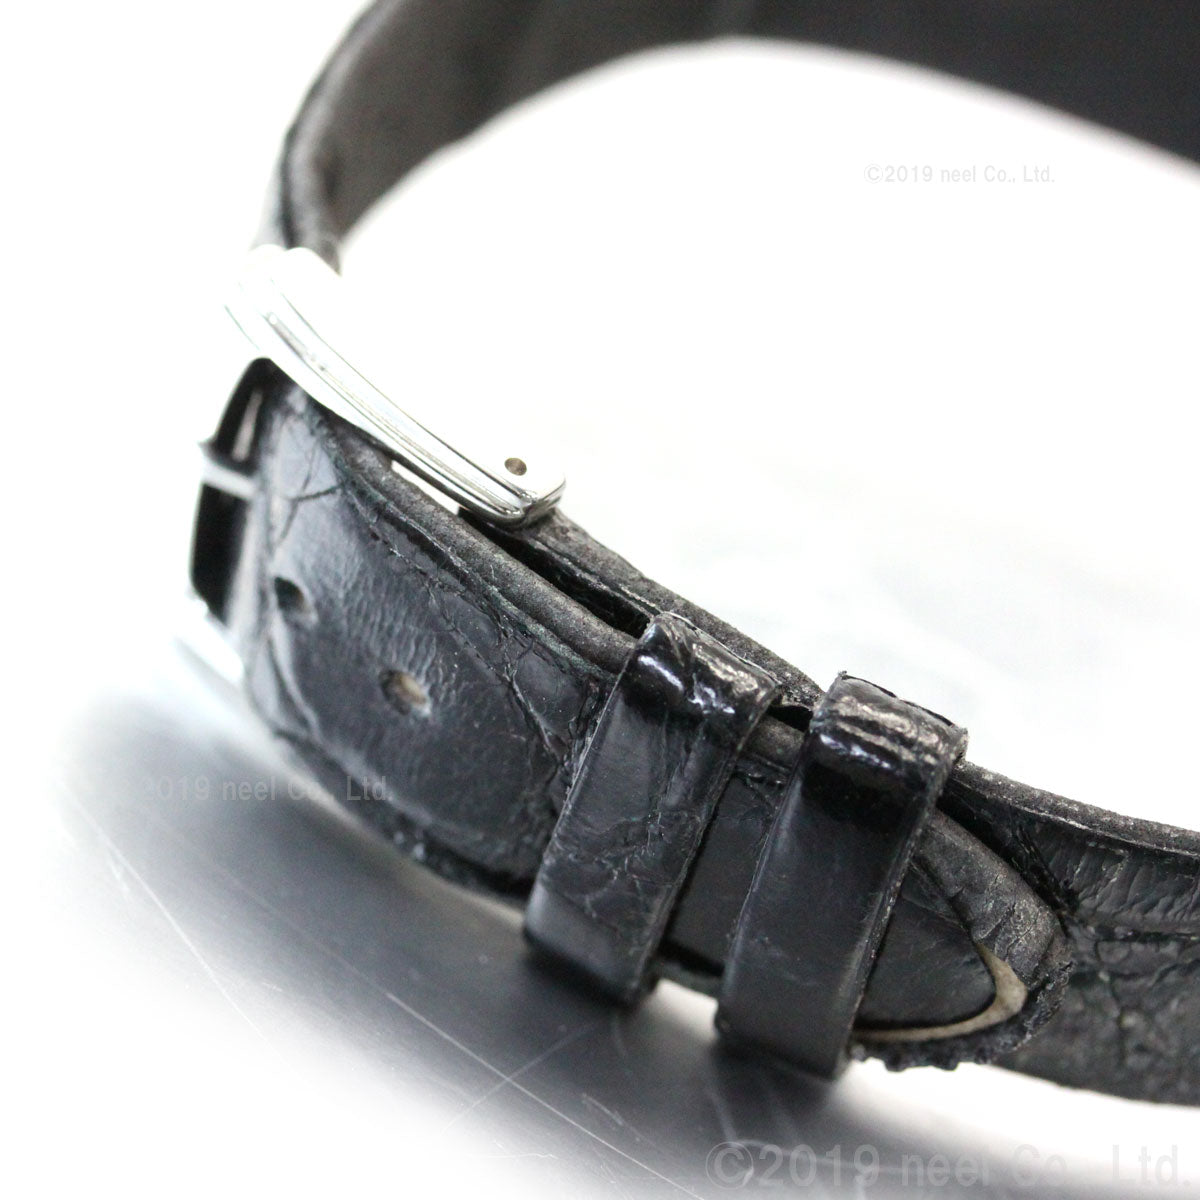 セイコー ドルチェ SEIKO DOLCE 腕時計 メンズ ペアウォッチ SACM171【セイコー ドルチェ】【正規品】【送料無料】